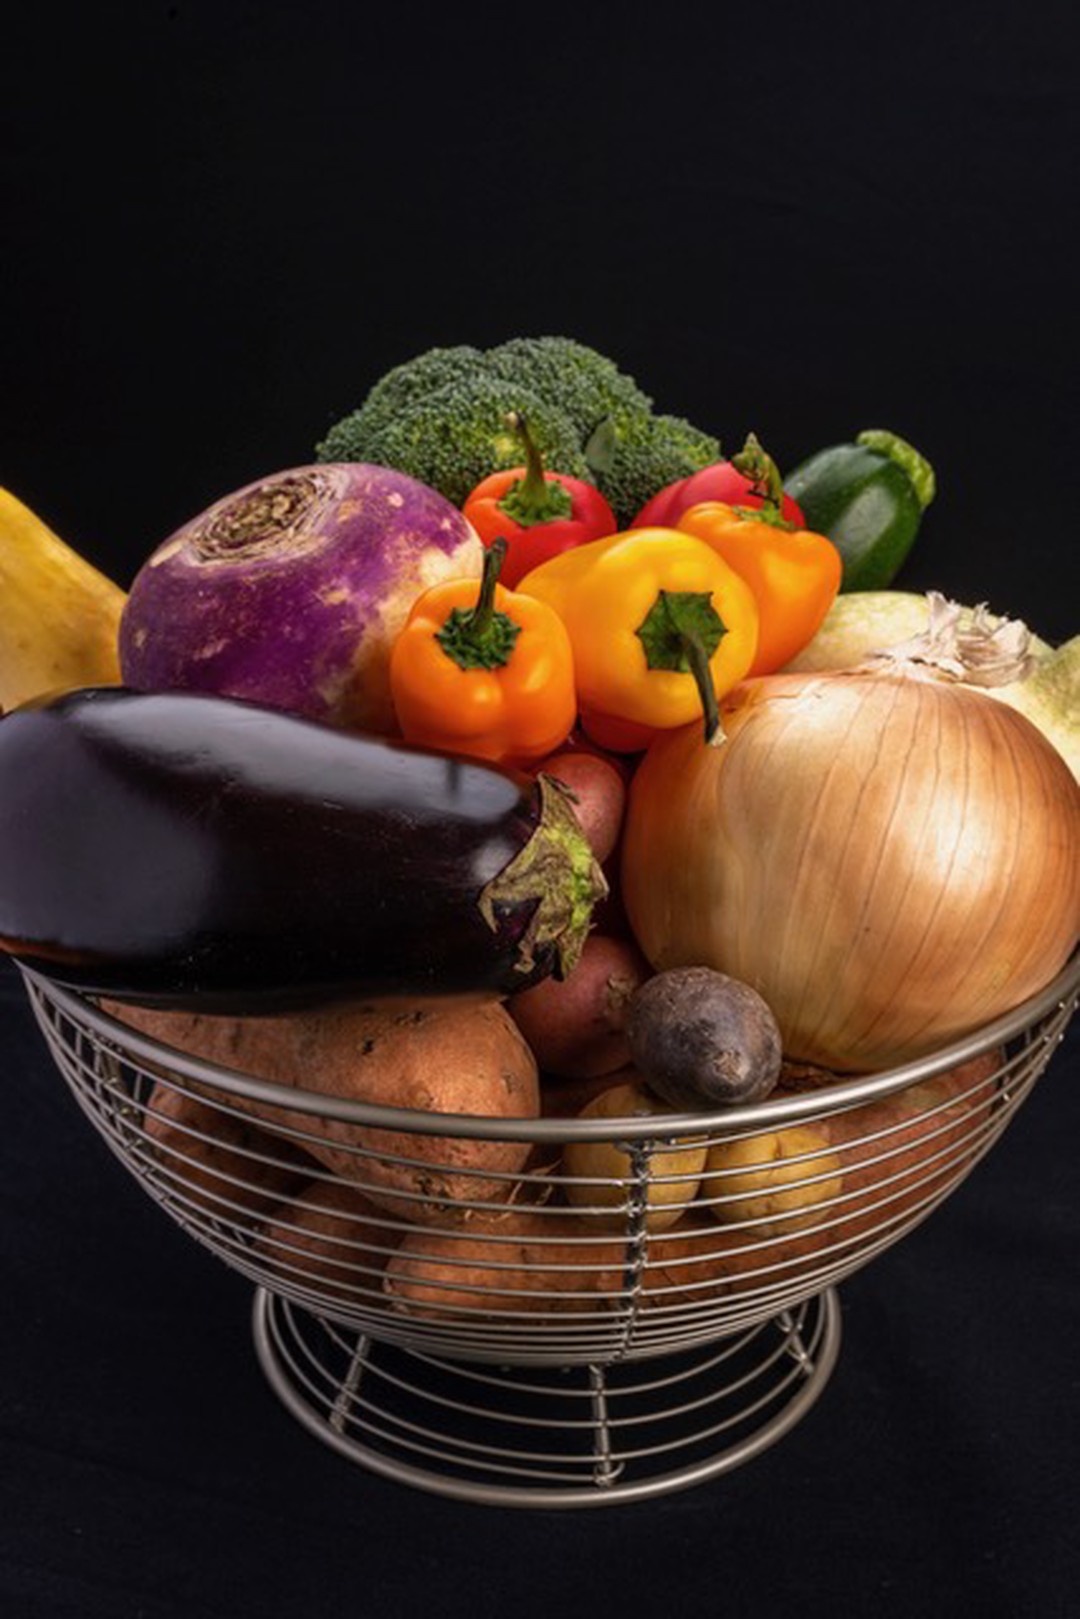 ¿Estás comiendo más alimentos vegetales poco procesados?